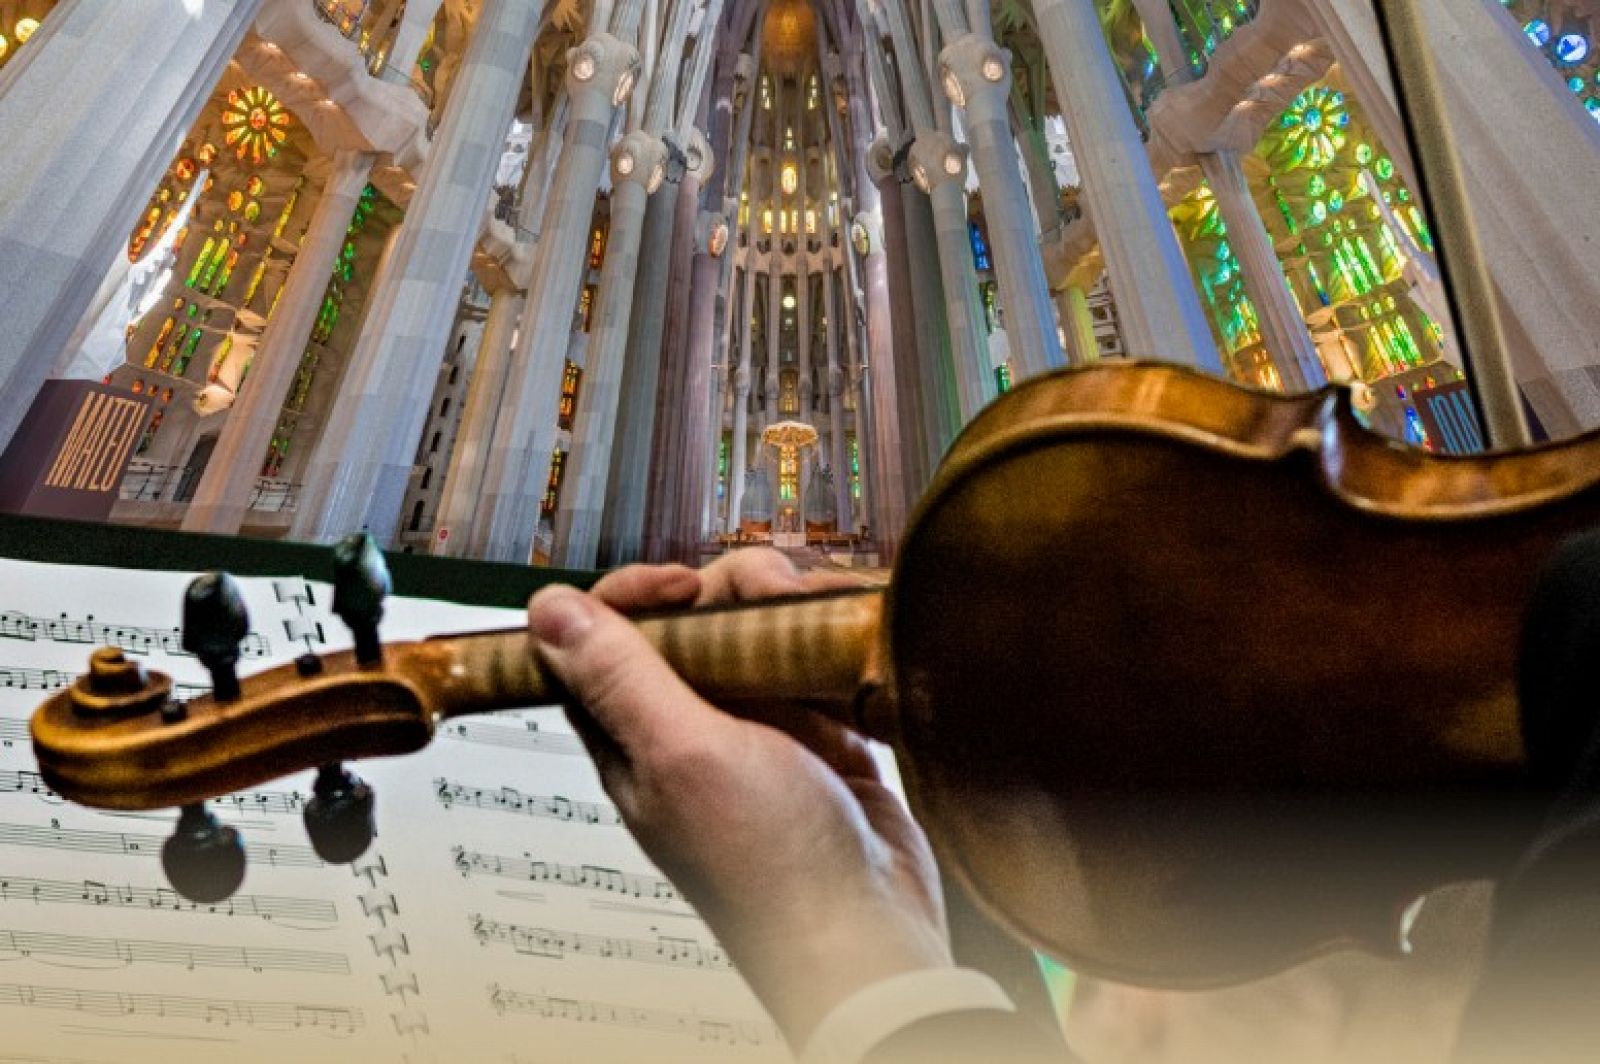 Fotomuntatge de la Sagrada Família amb un músic tocant el violí